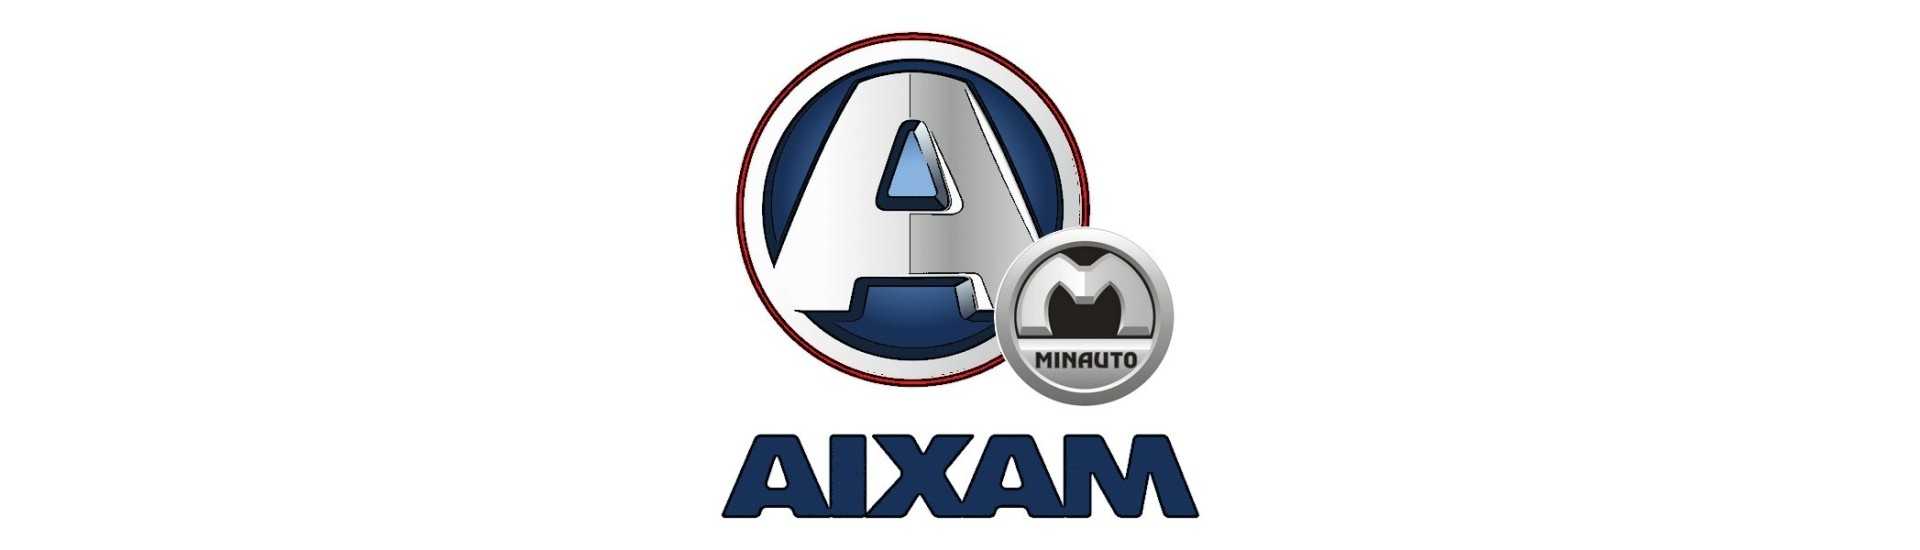 Accelerator-Kabel zum besten Preis Auto ohne Lizenz Aixam Minauto